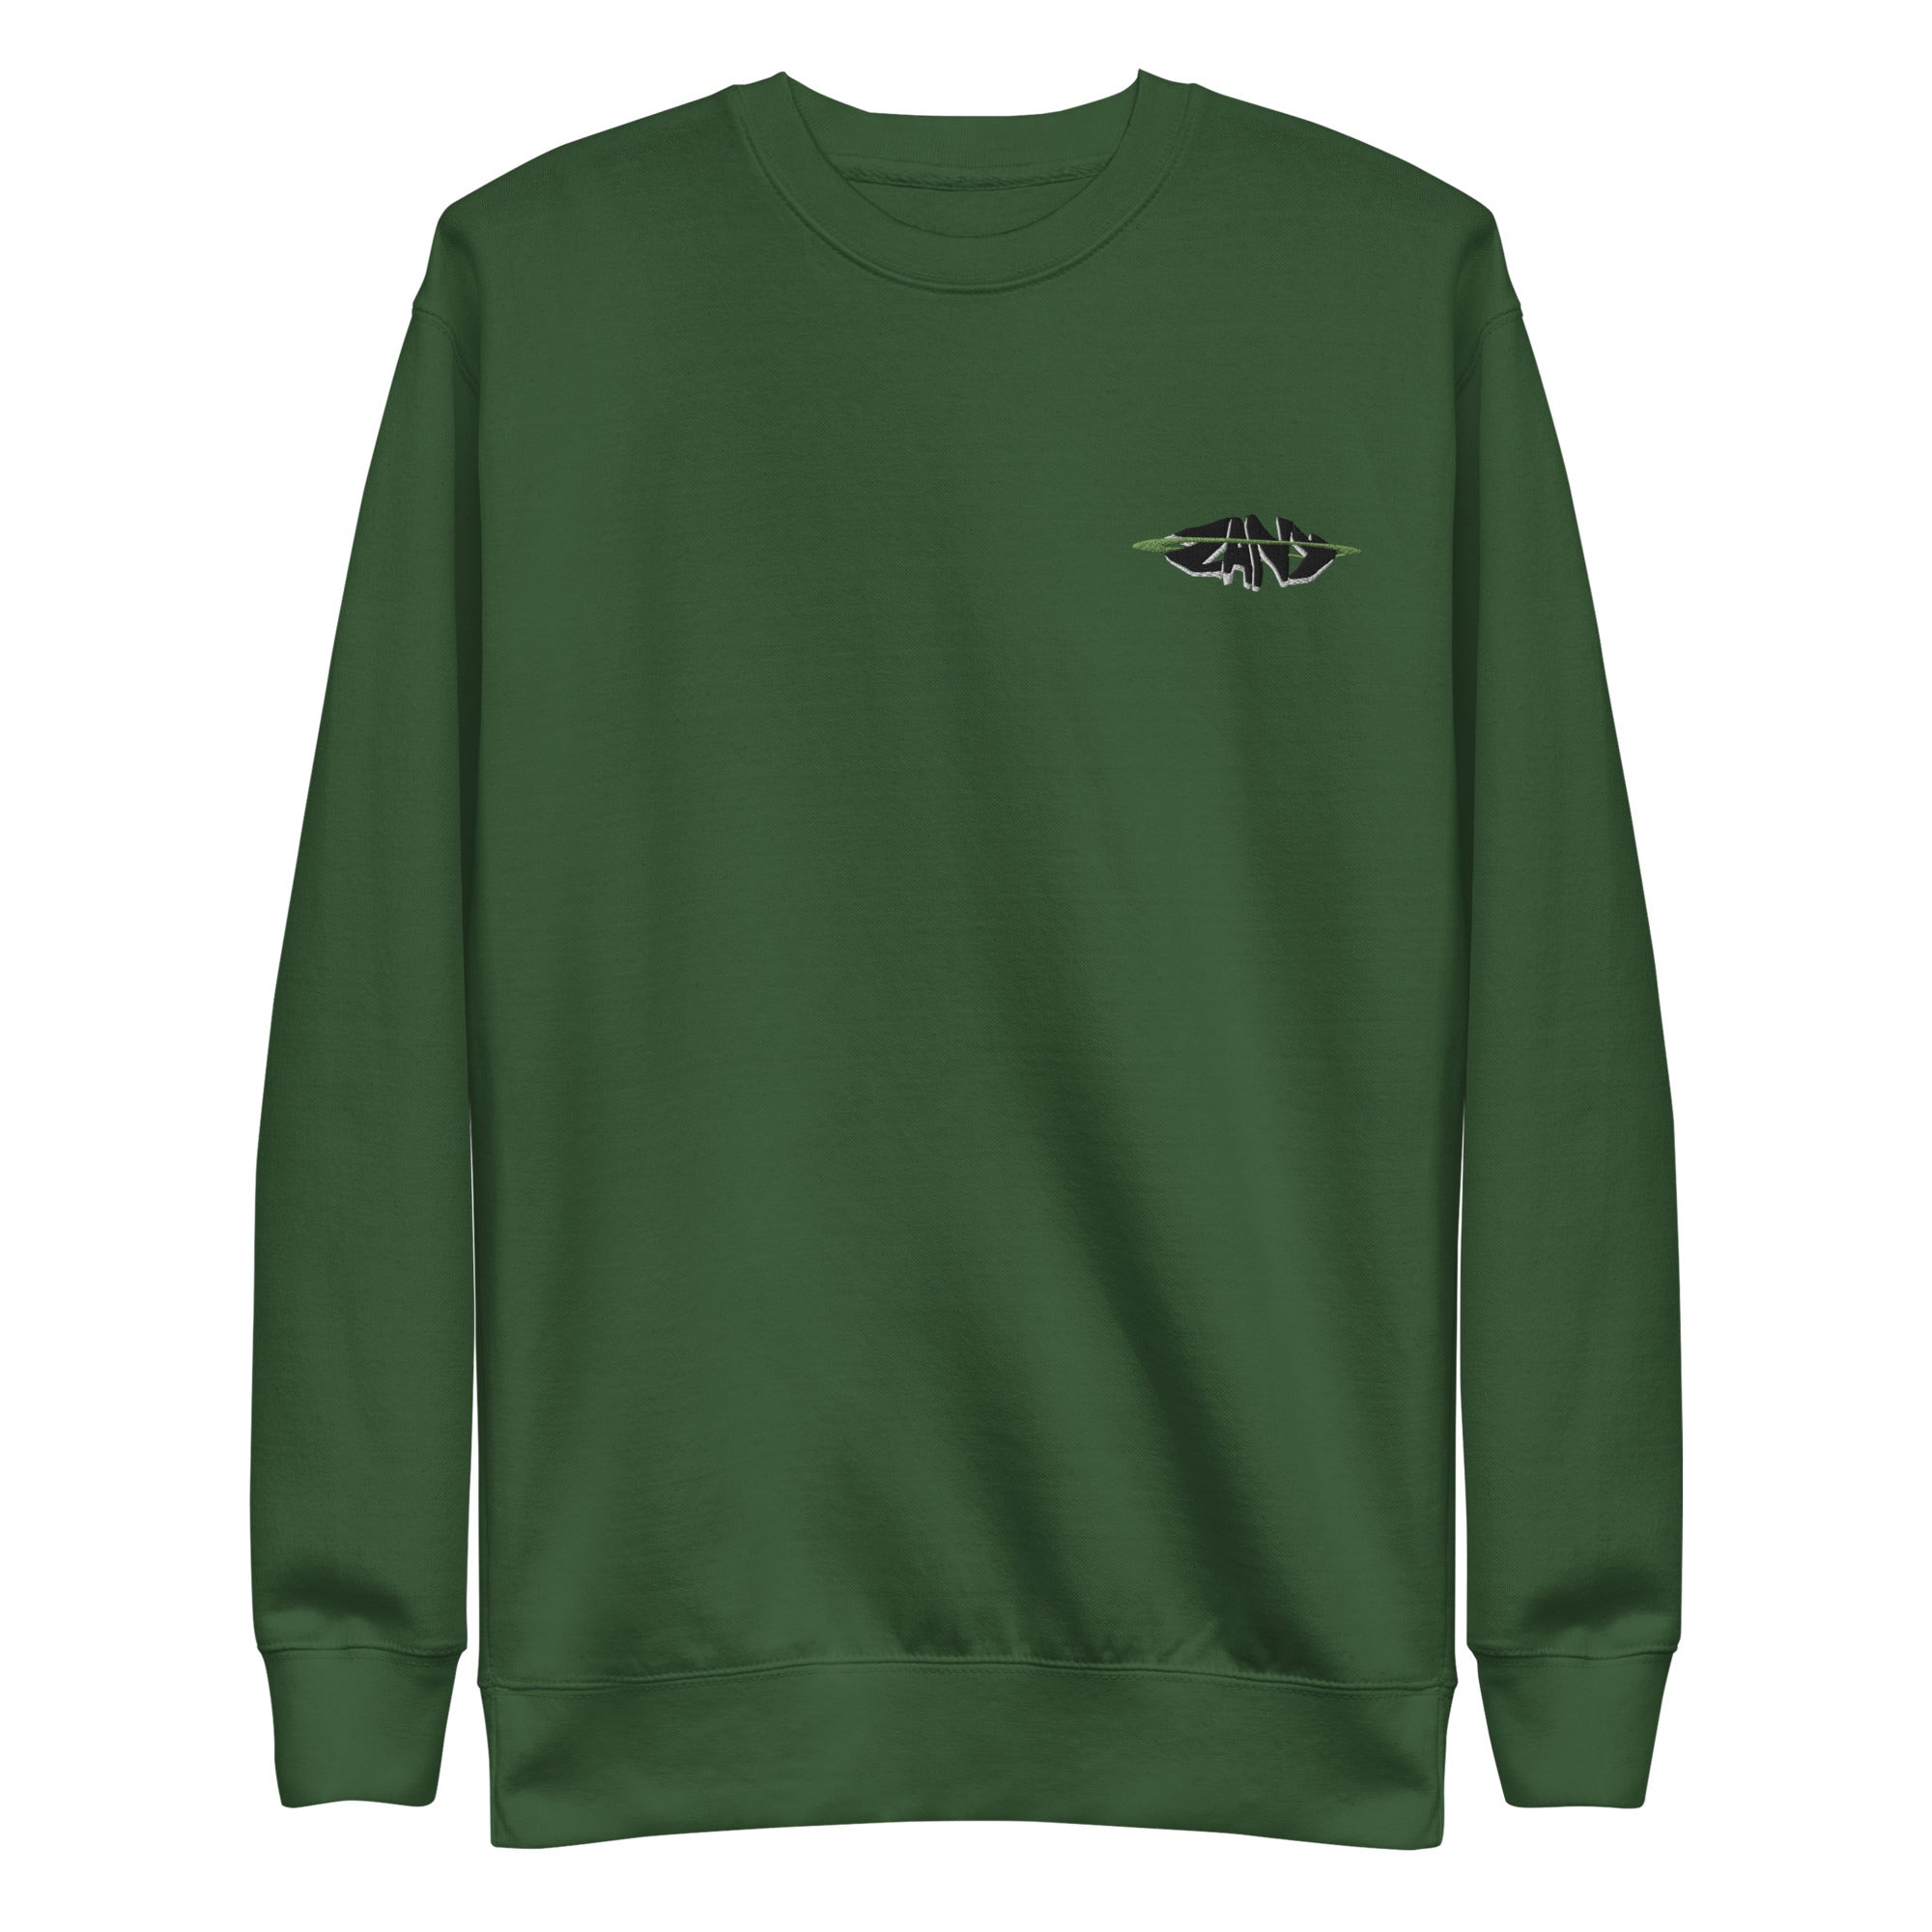 unisex-premium-sweatshirt-forest-green-front-6507d2c99ef46.jpg